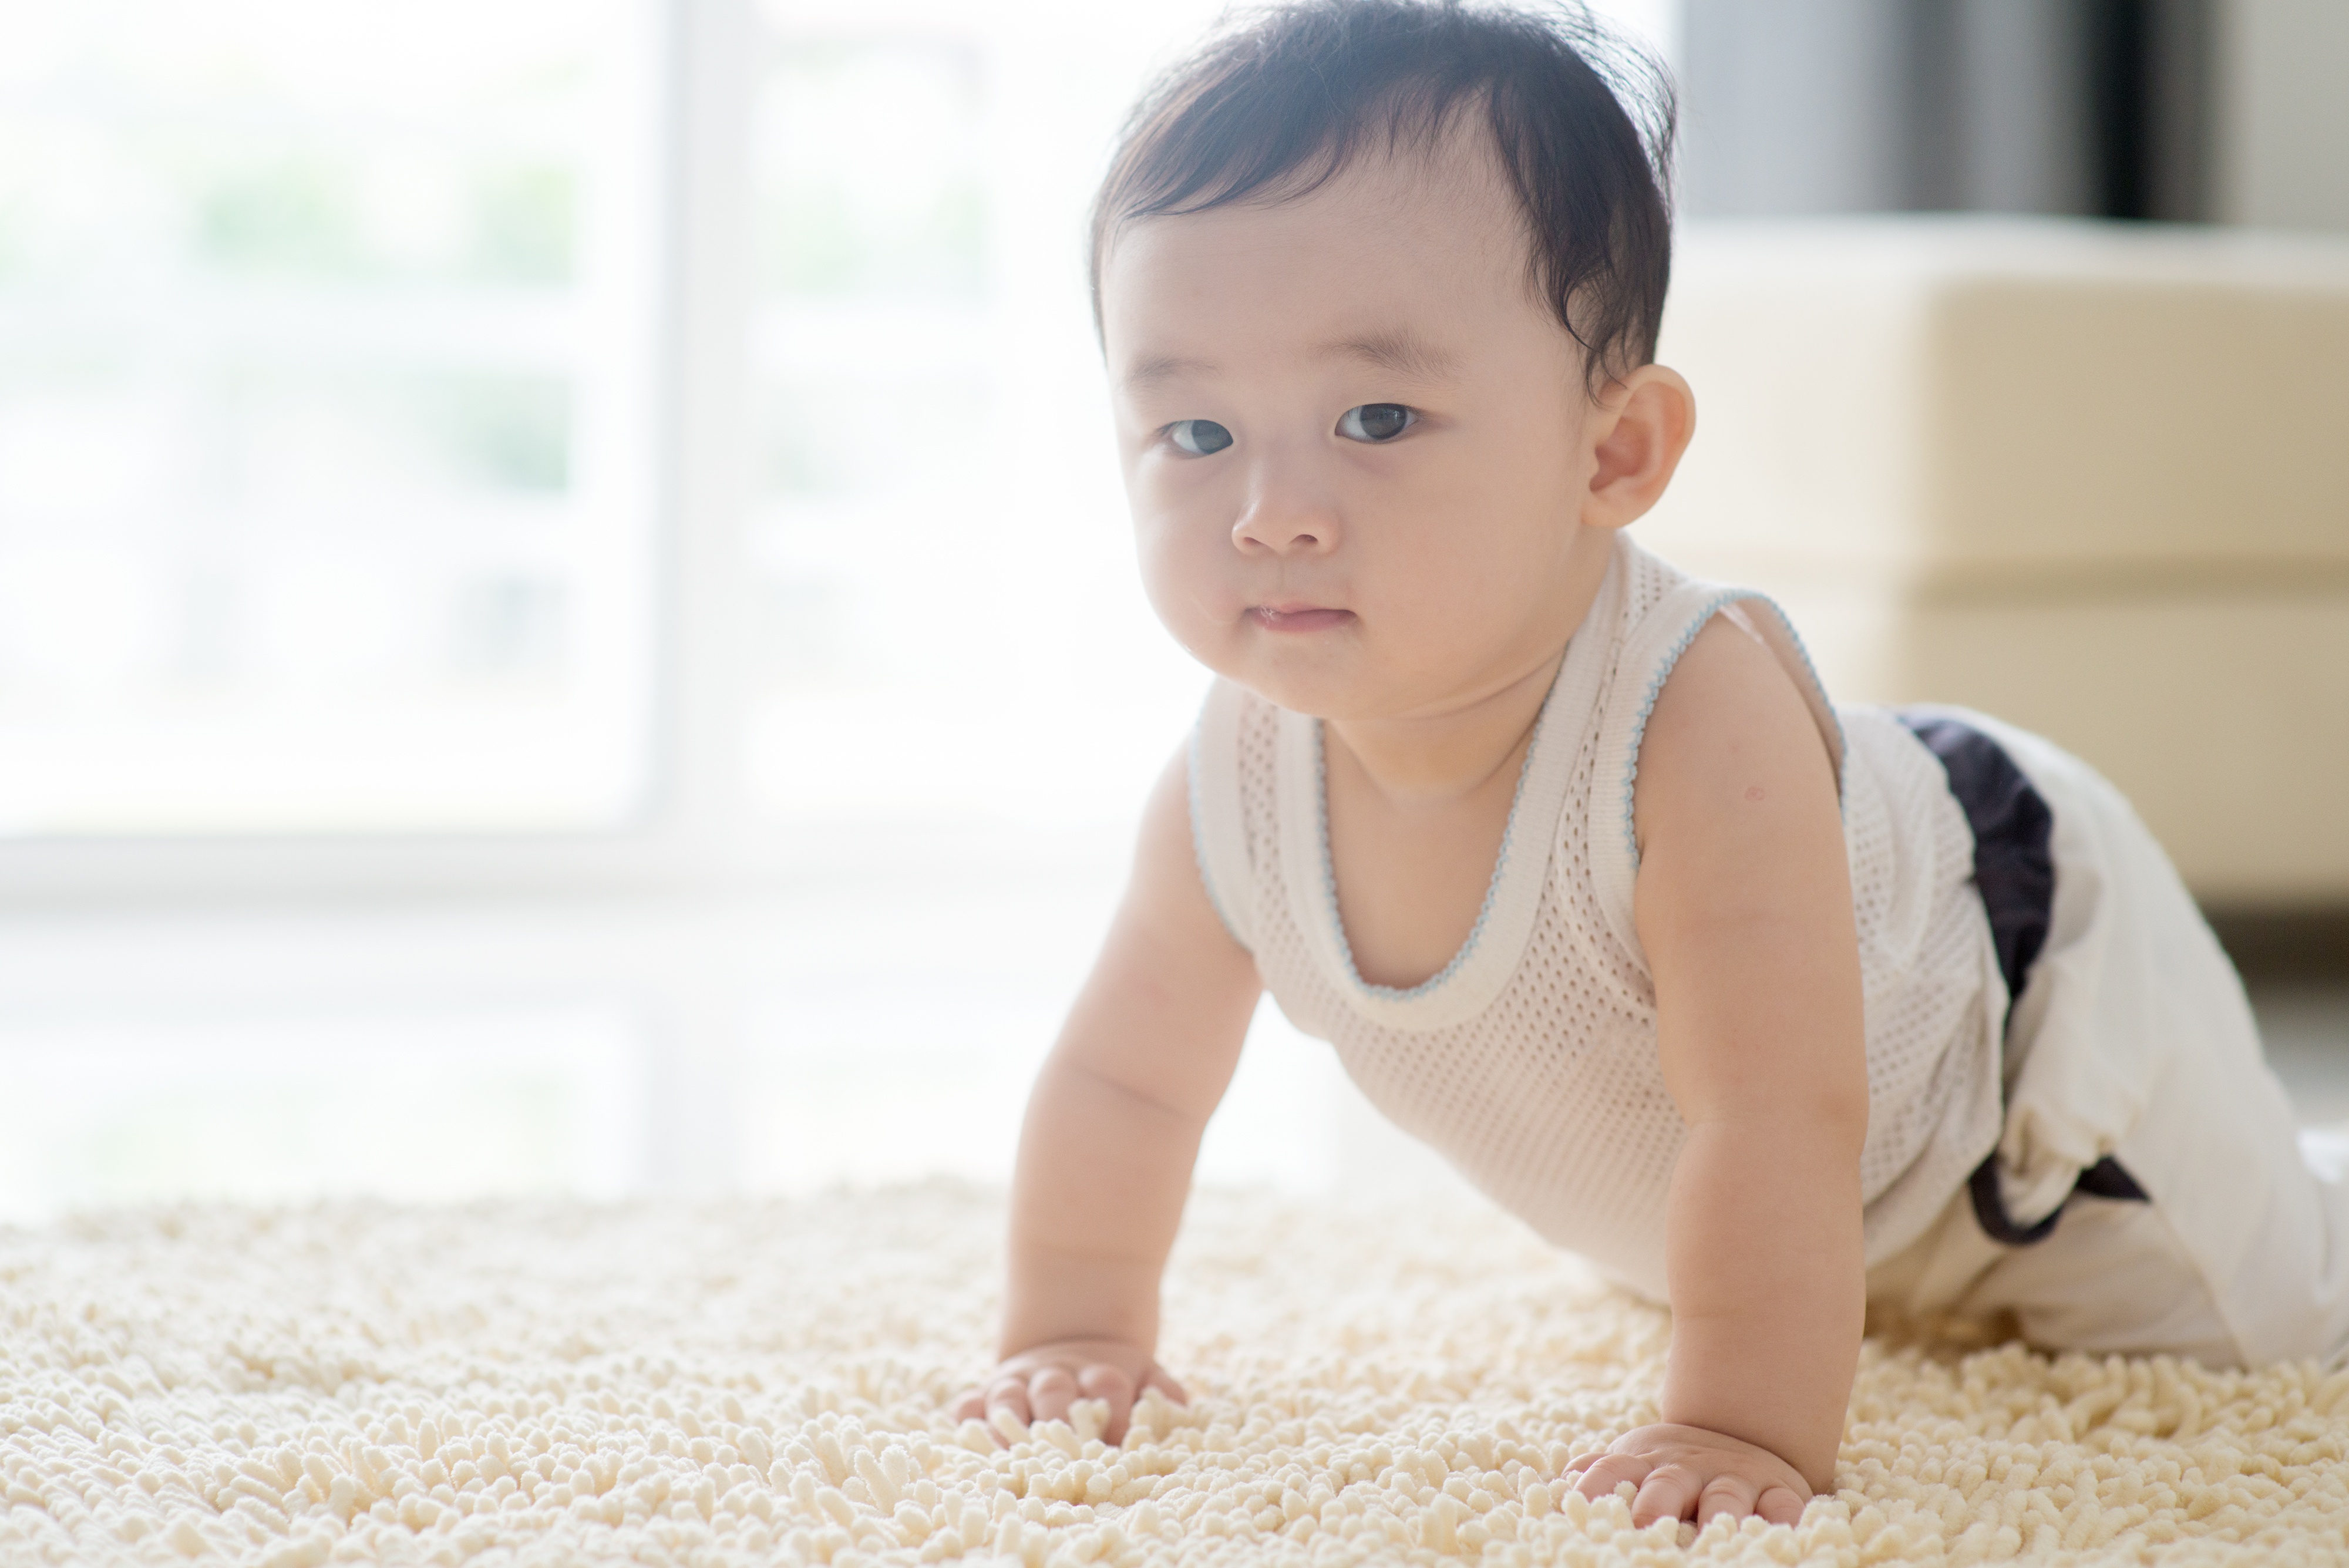 bigstock-Chinese-baby-boy-crawling-on-f-229929631